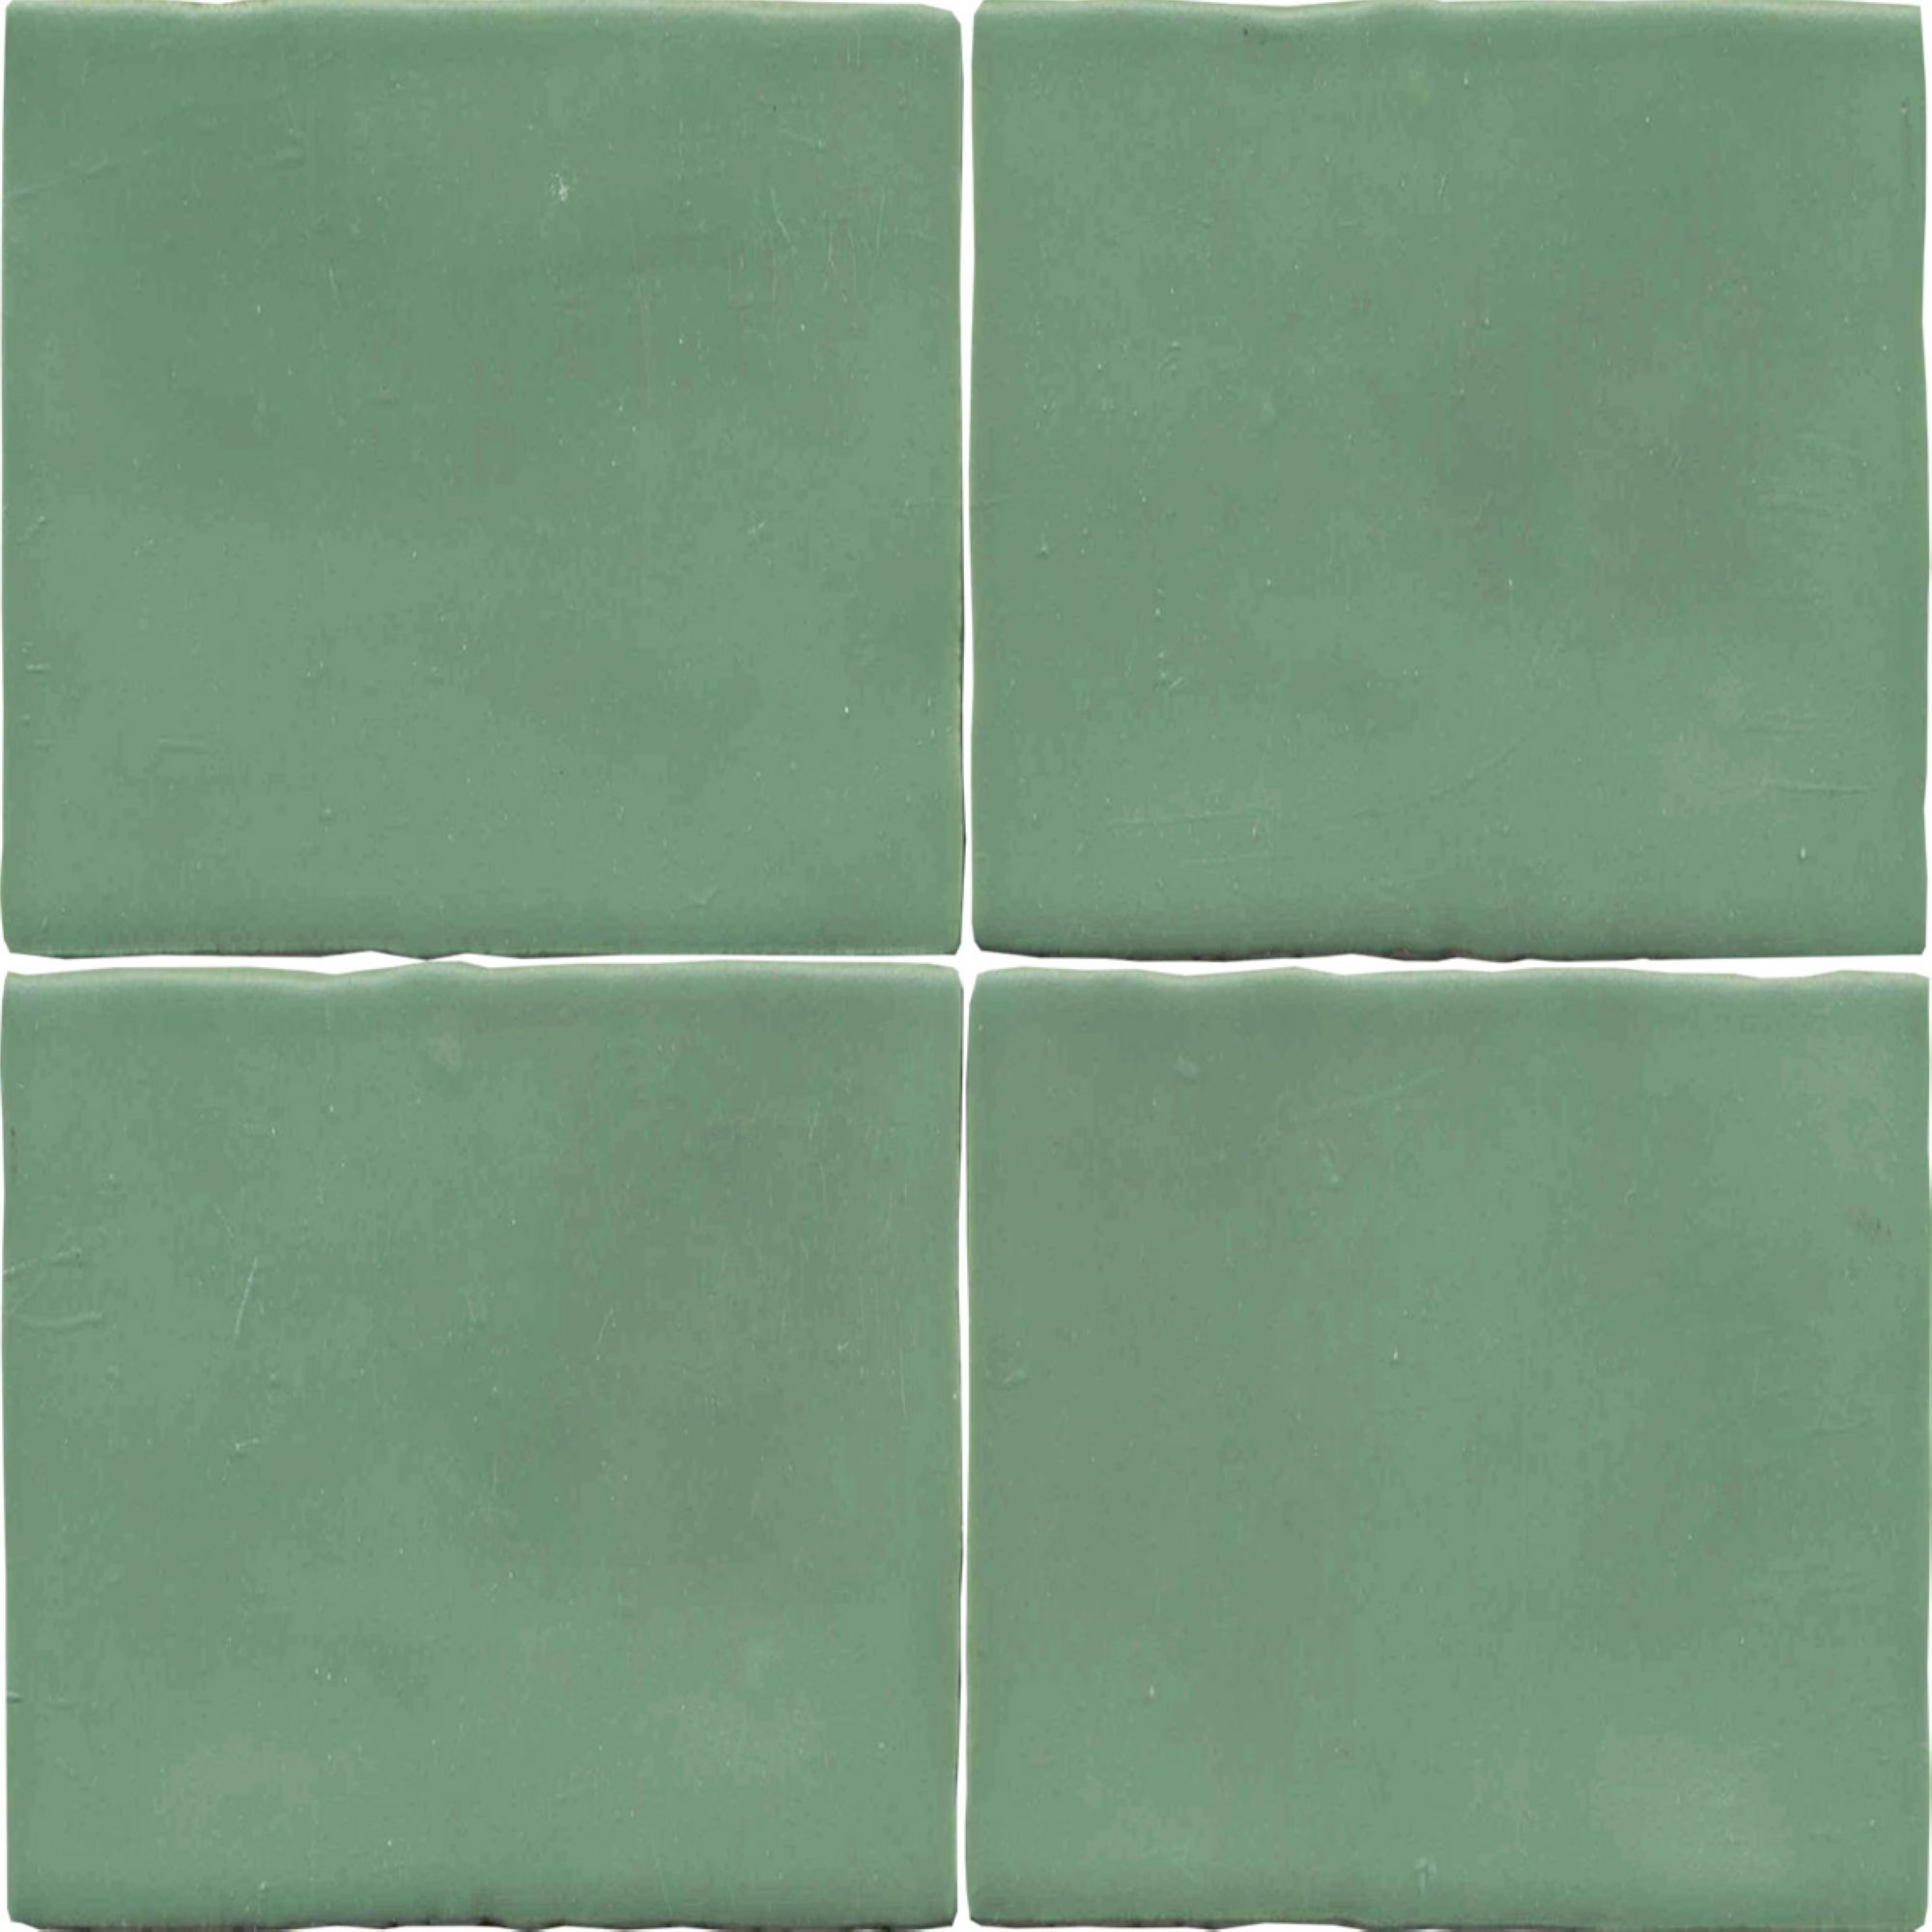 Wandfliese 'Crayon' grün matt 13 x 13 cm + product picture